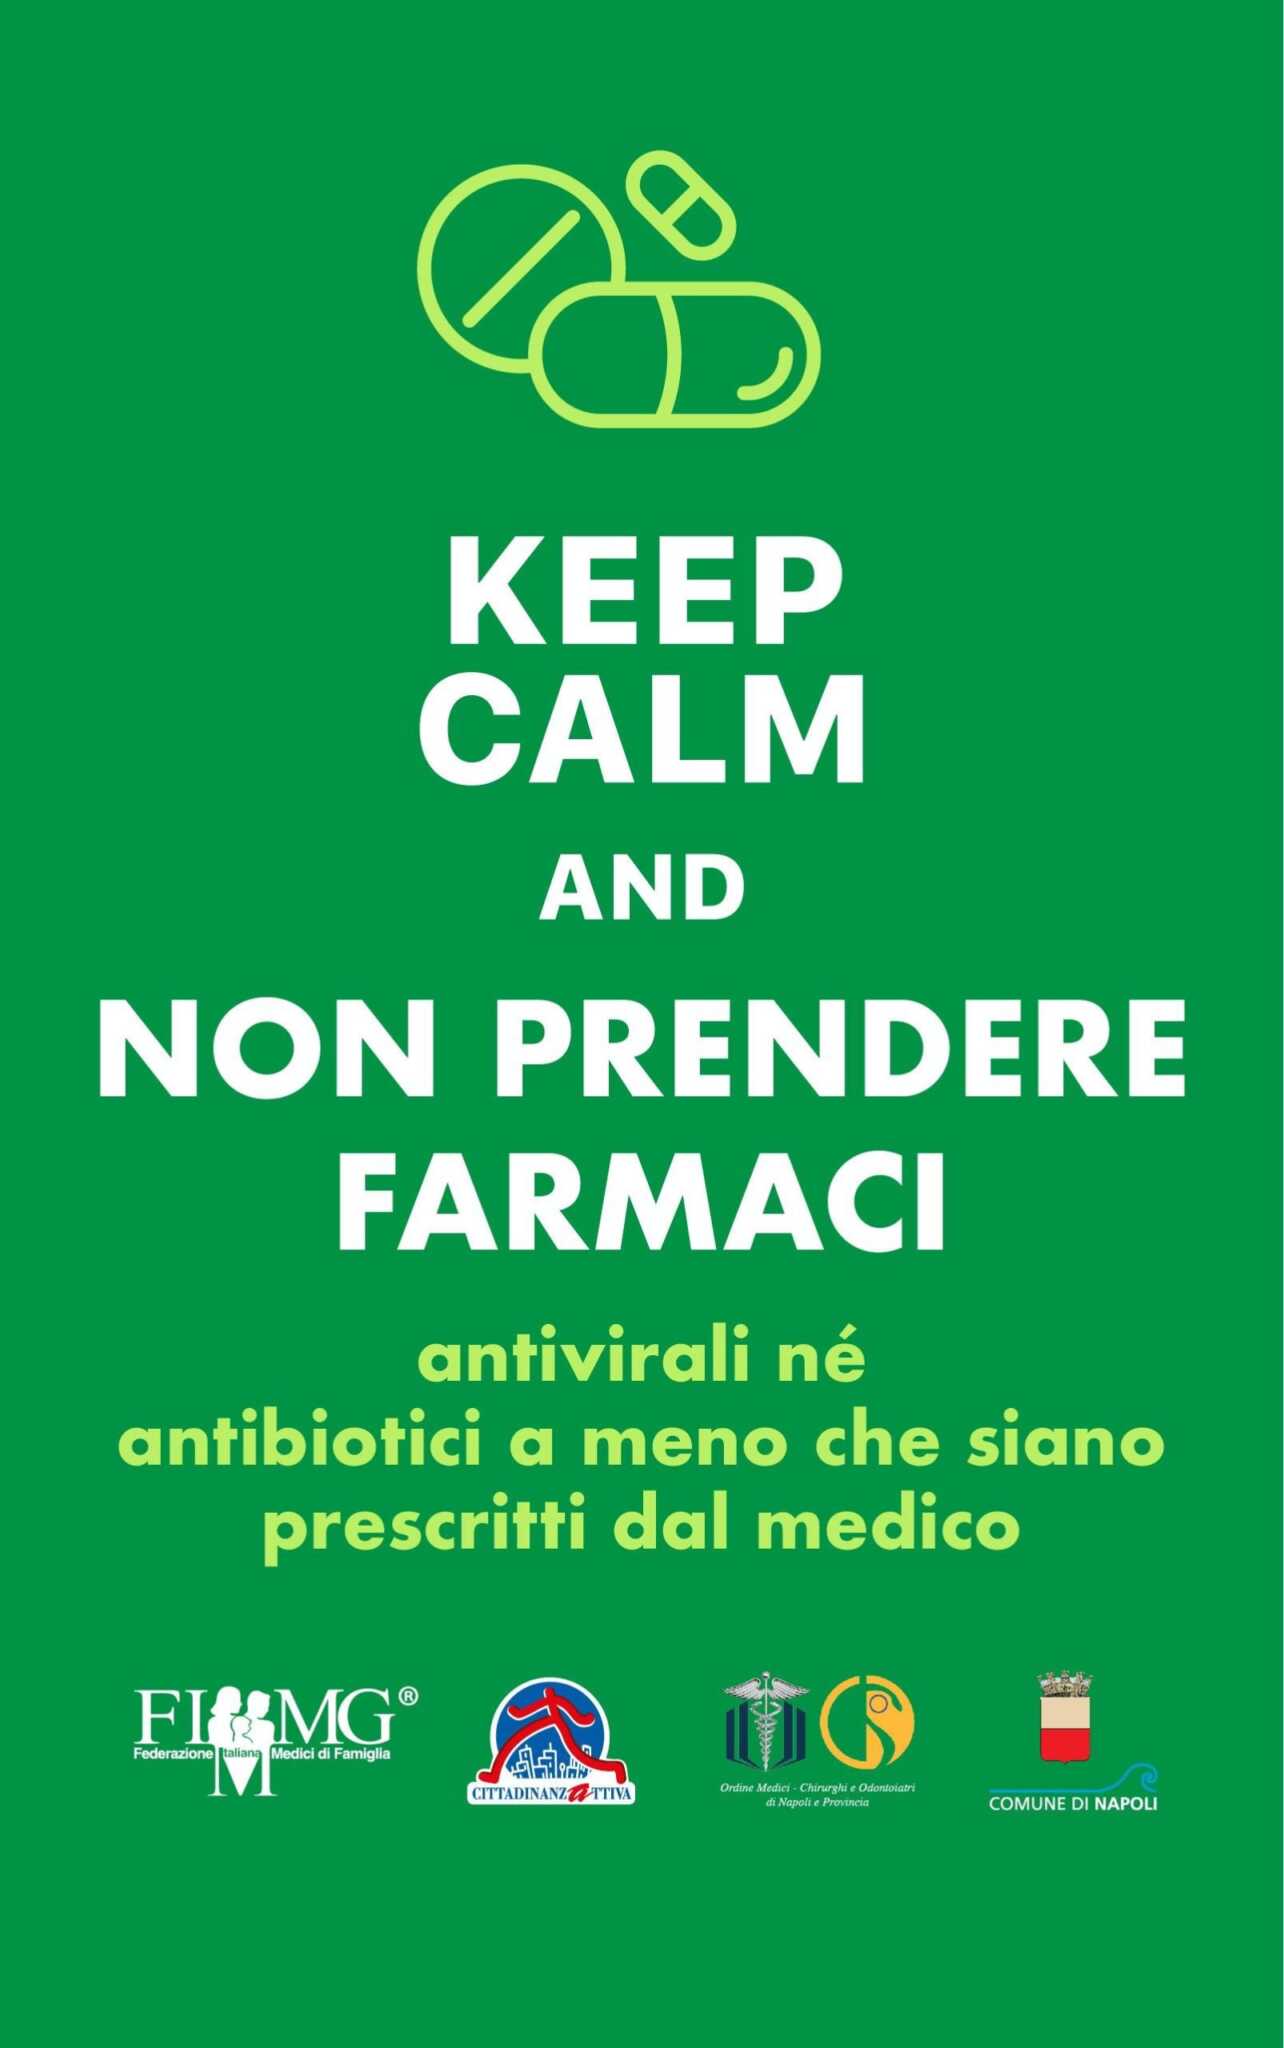 ‘Keep calm’, Napoli prima città d’Italia a lanciare una campagna d’informazione per combattere il coronavirus, anche con il buon senso